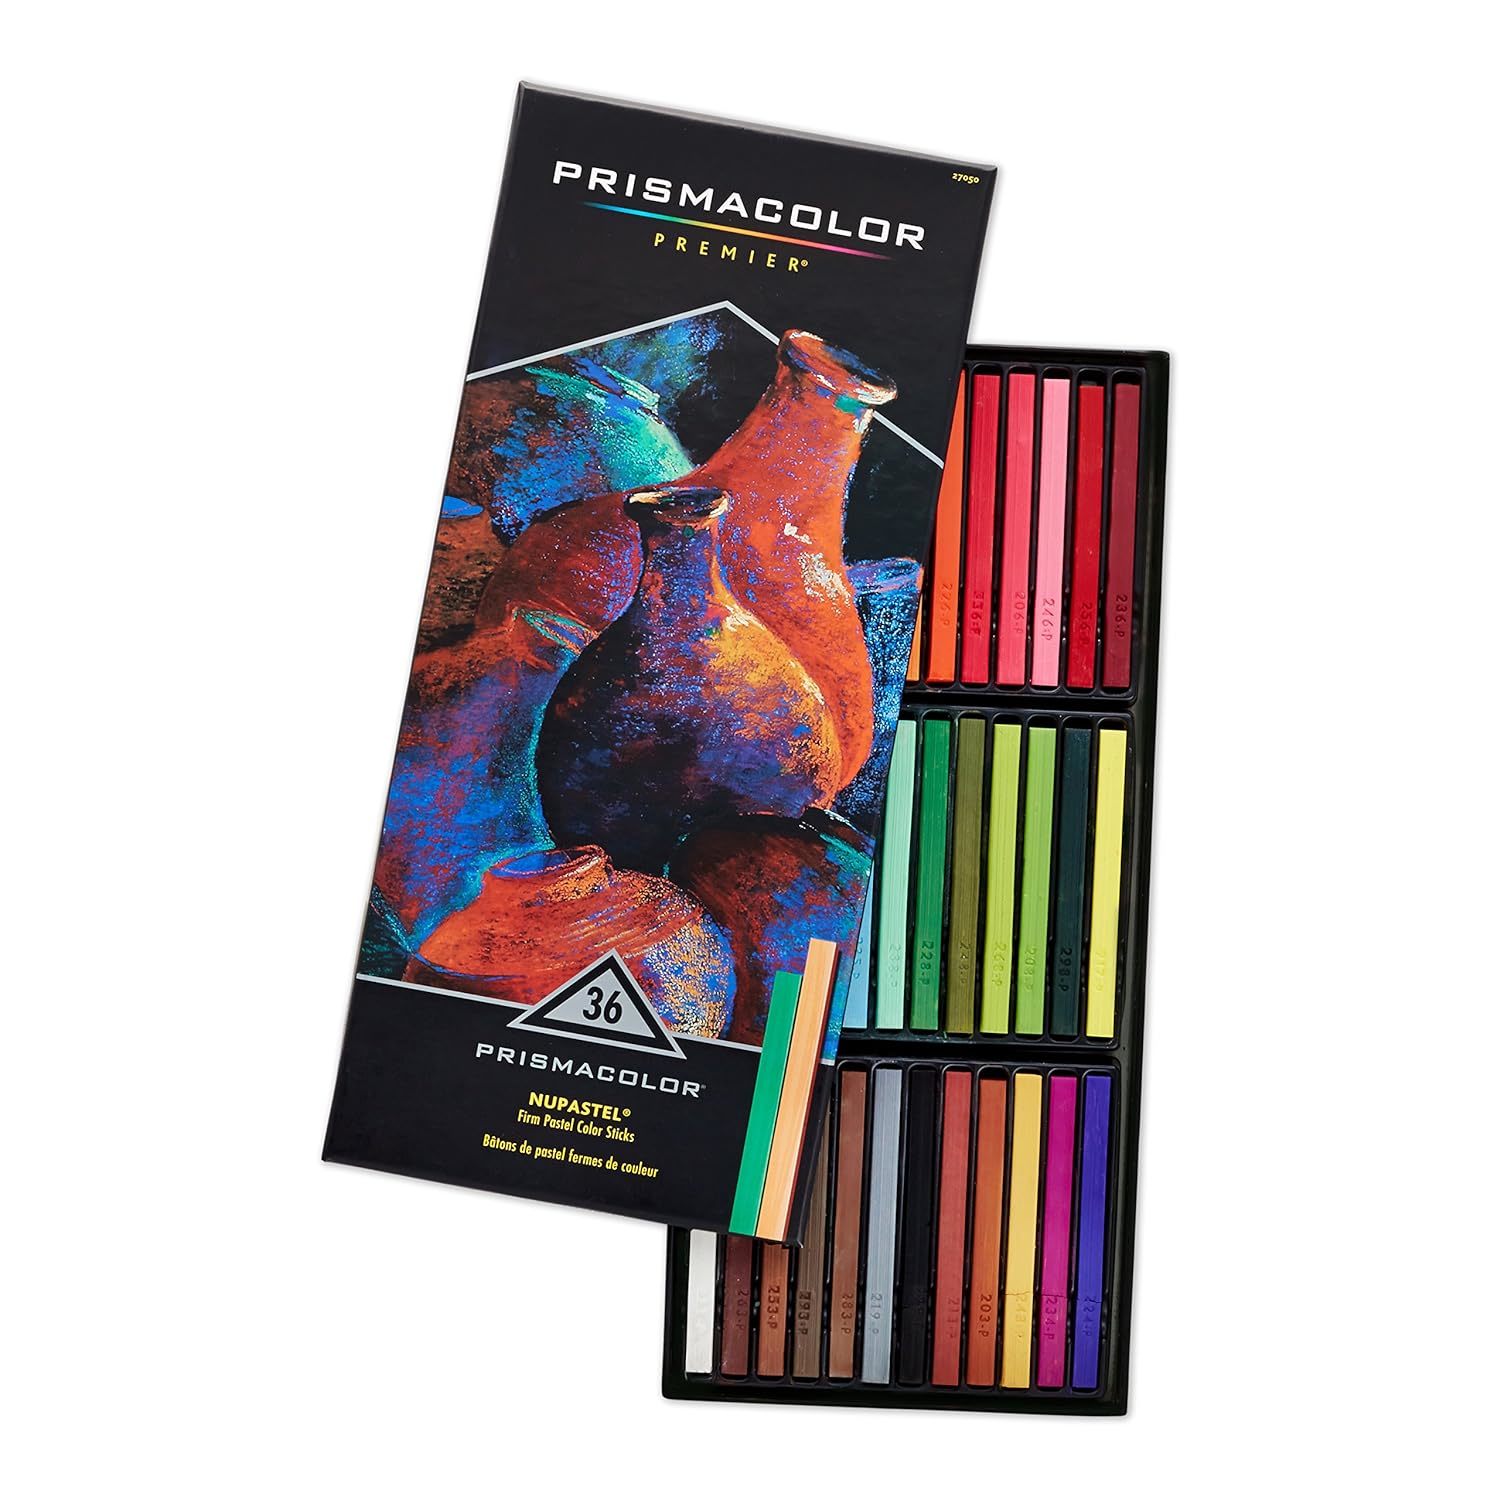 Prismacolor 27050 Premier NuPastel Firm Pastel Color Sticks, 36-Count - $71.99